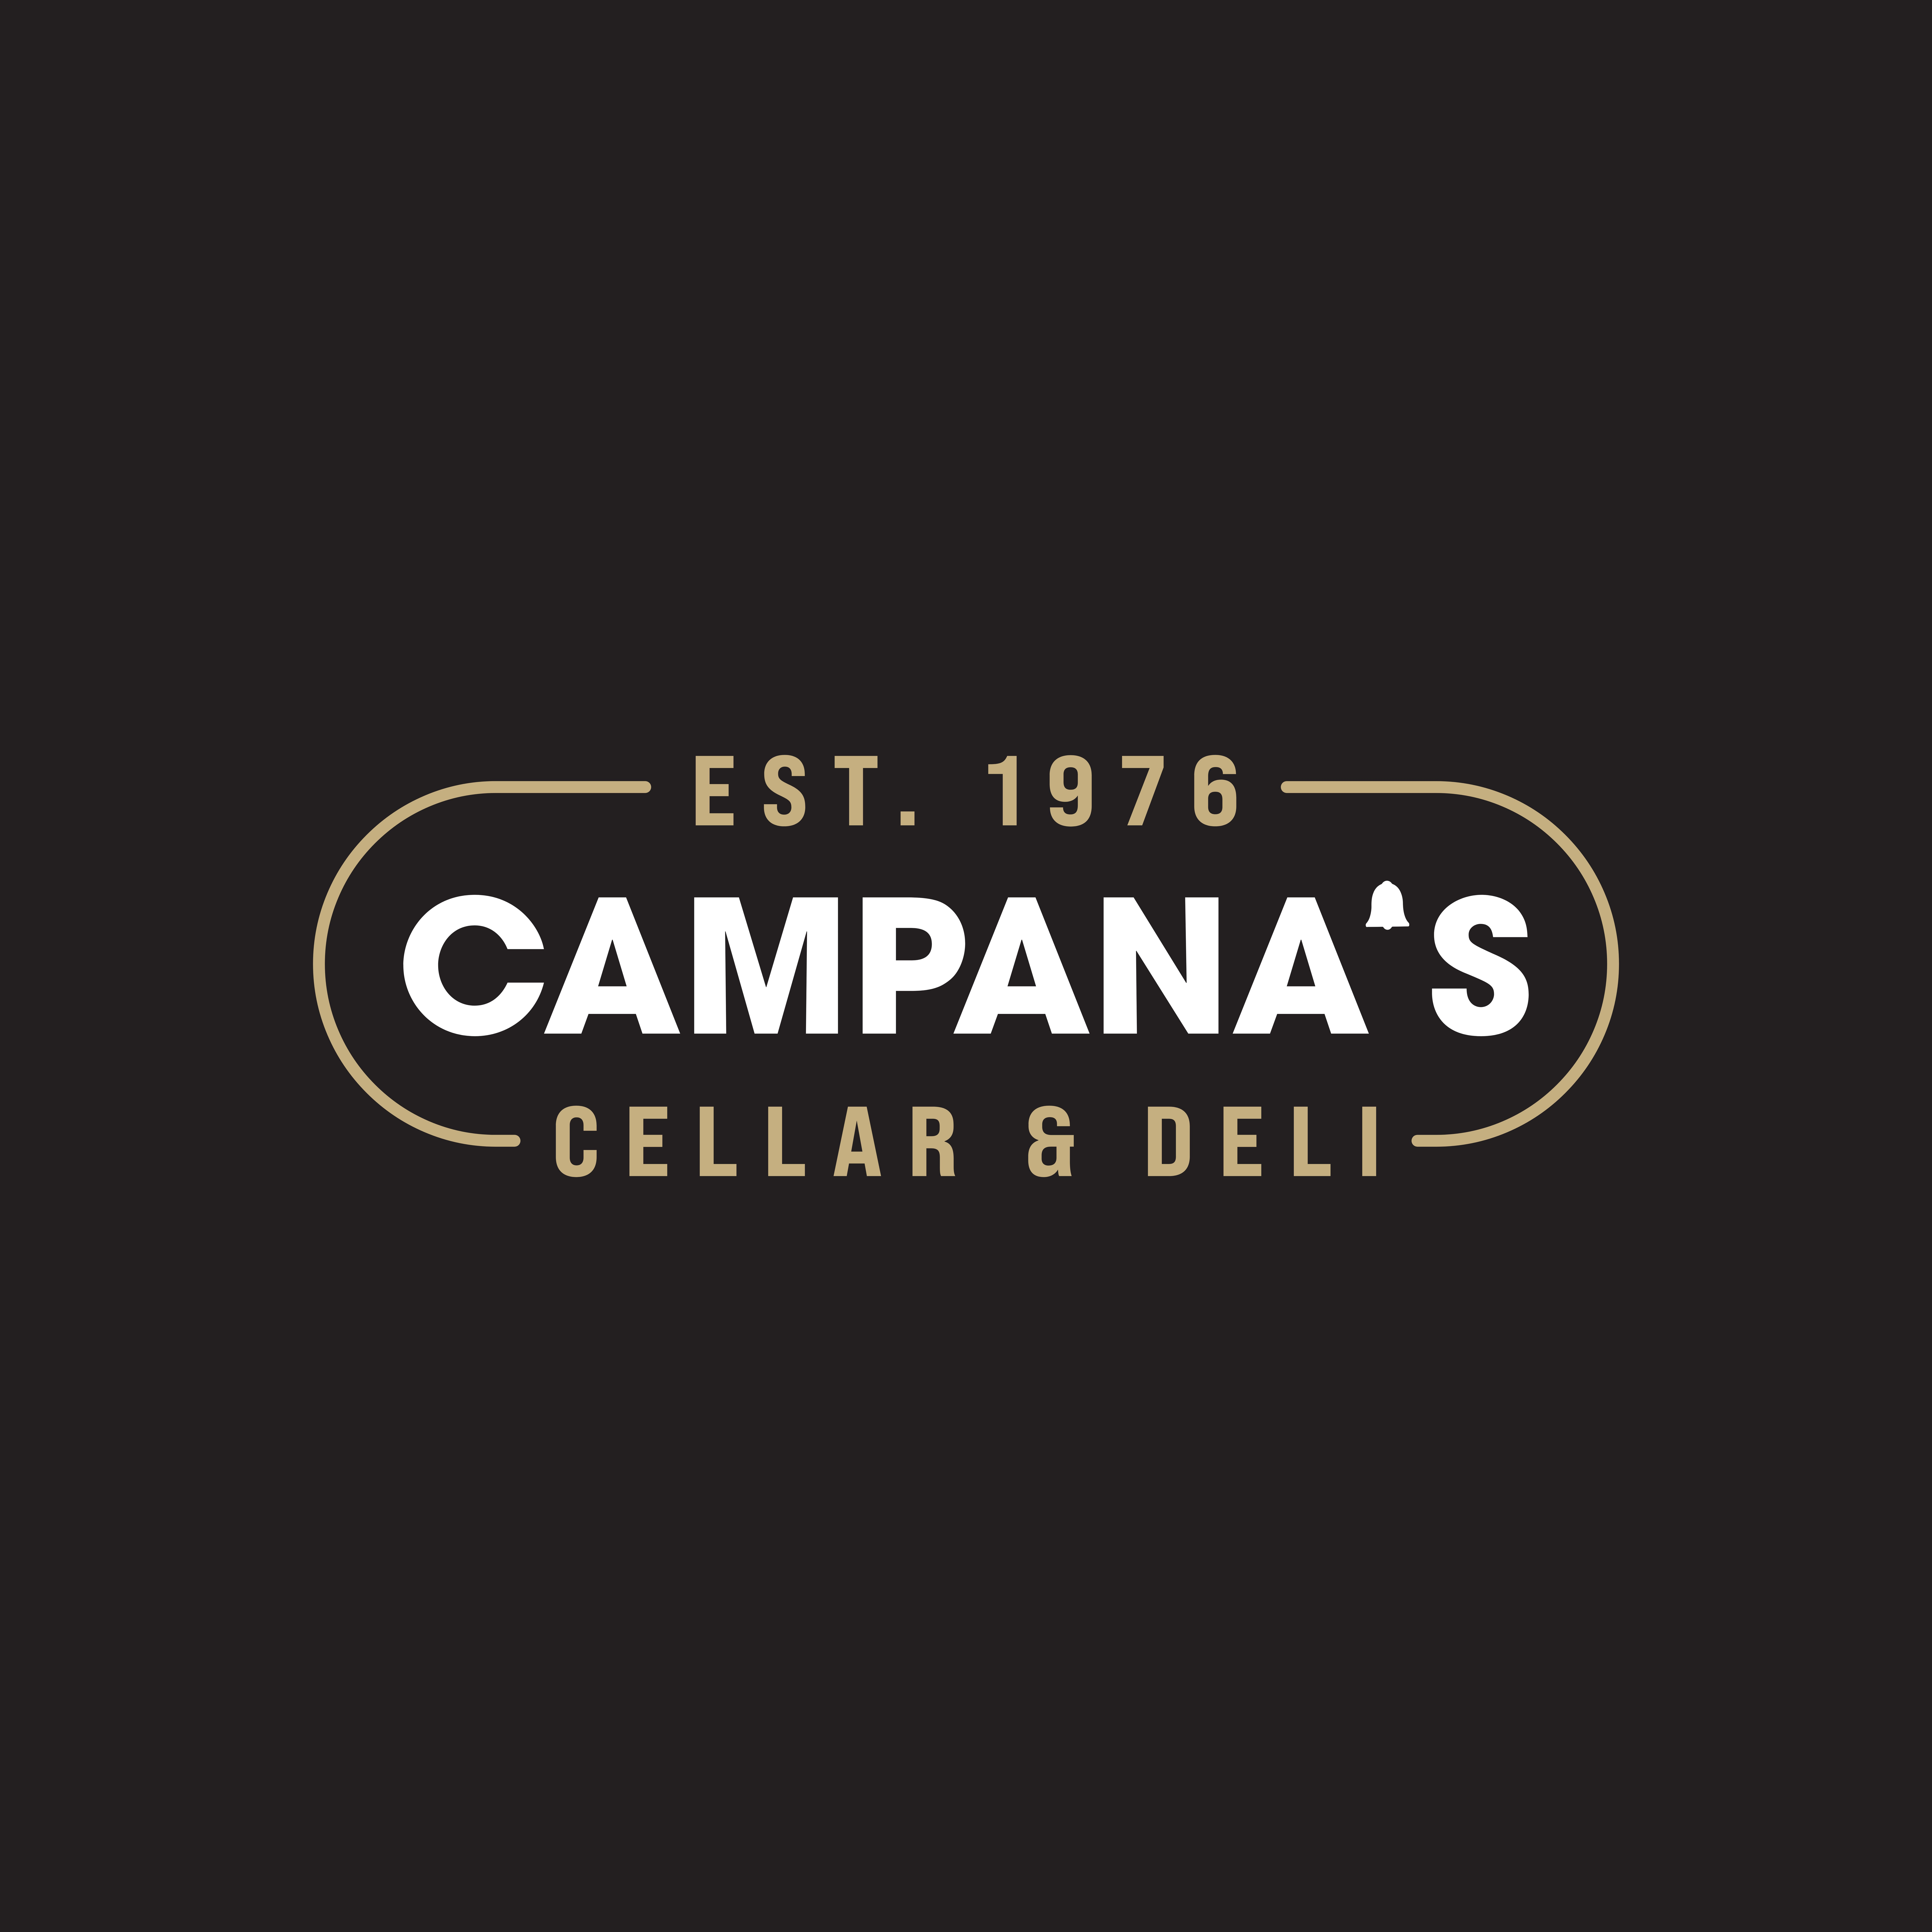 Campana's Cellar & Delli 